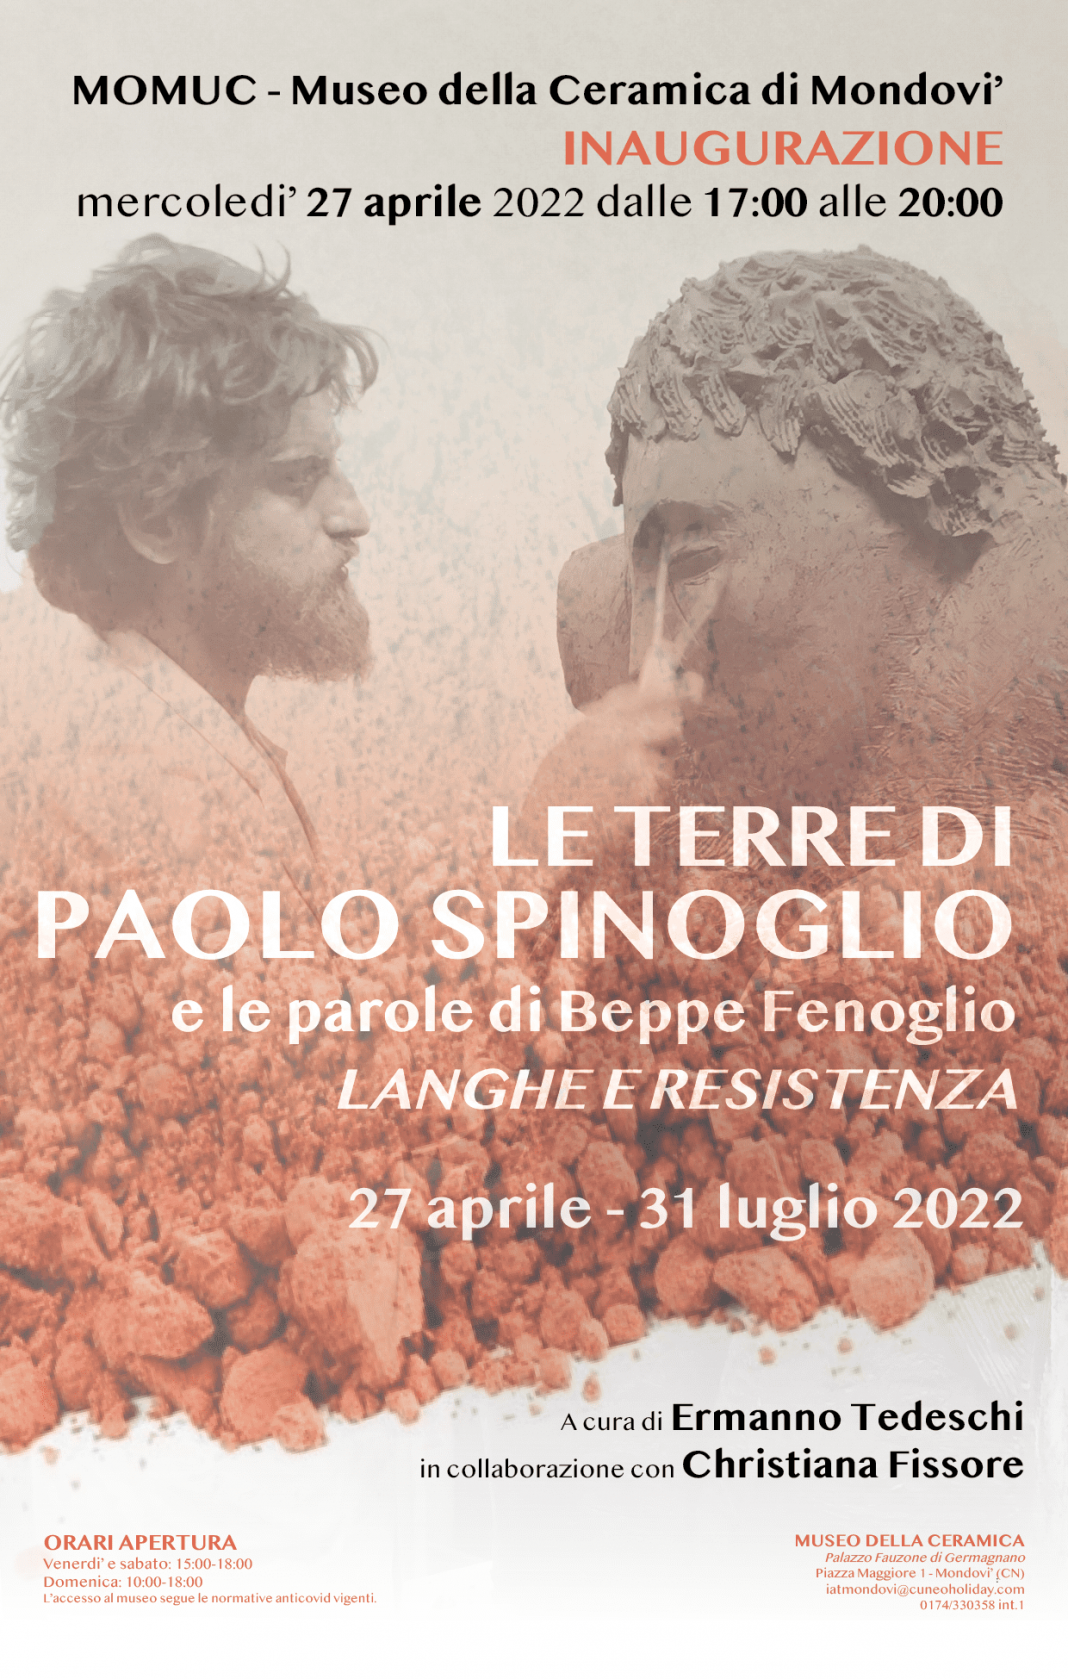 Le terre di Paolo Spinoglio e le parole di Beppe Fenoglio – LANGHE E RESISTENZAhttps://www.exibart.com/repository/media/formidable/11/img/983/invito-Spinoglio-Momuc_-1068x1679.png